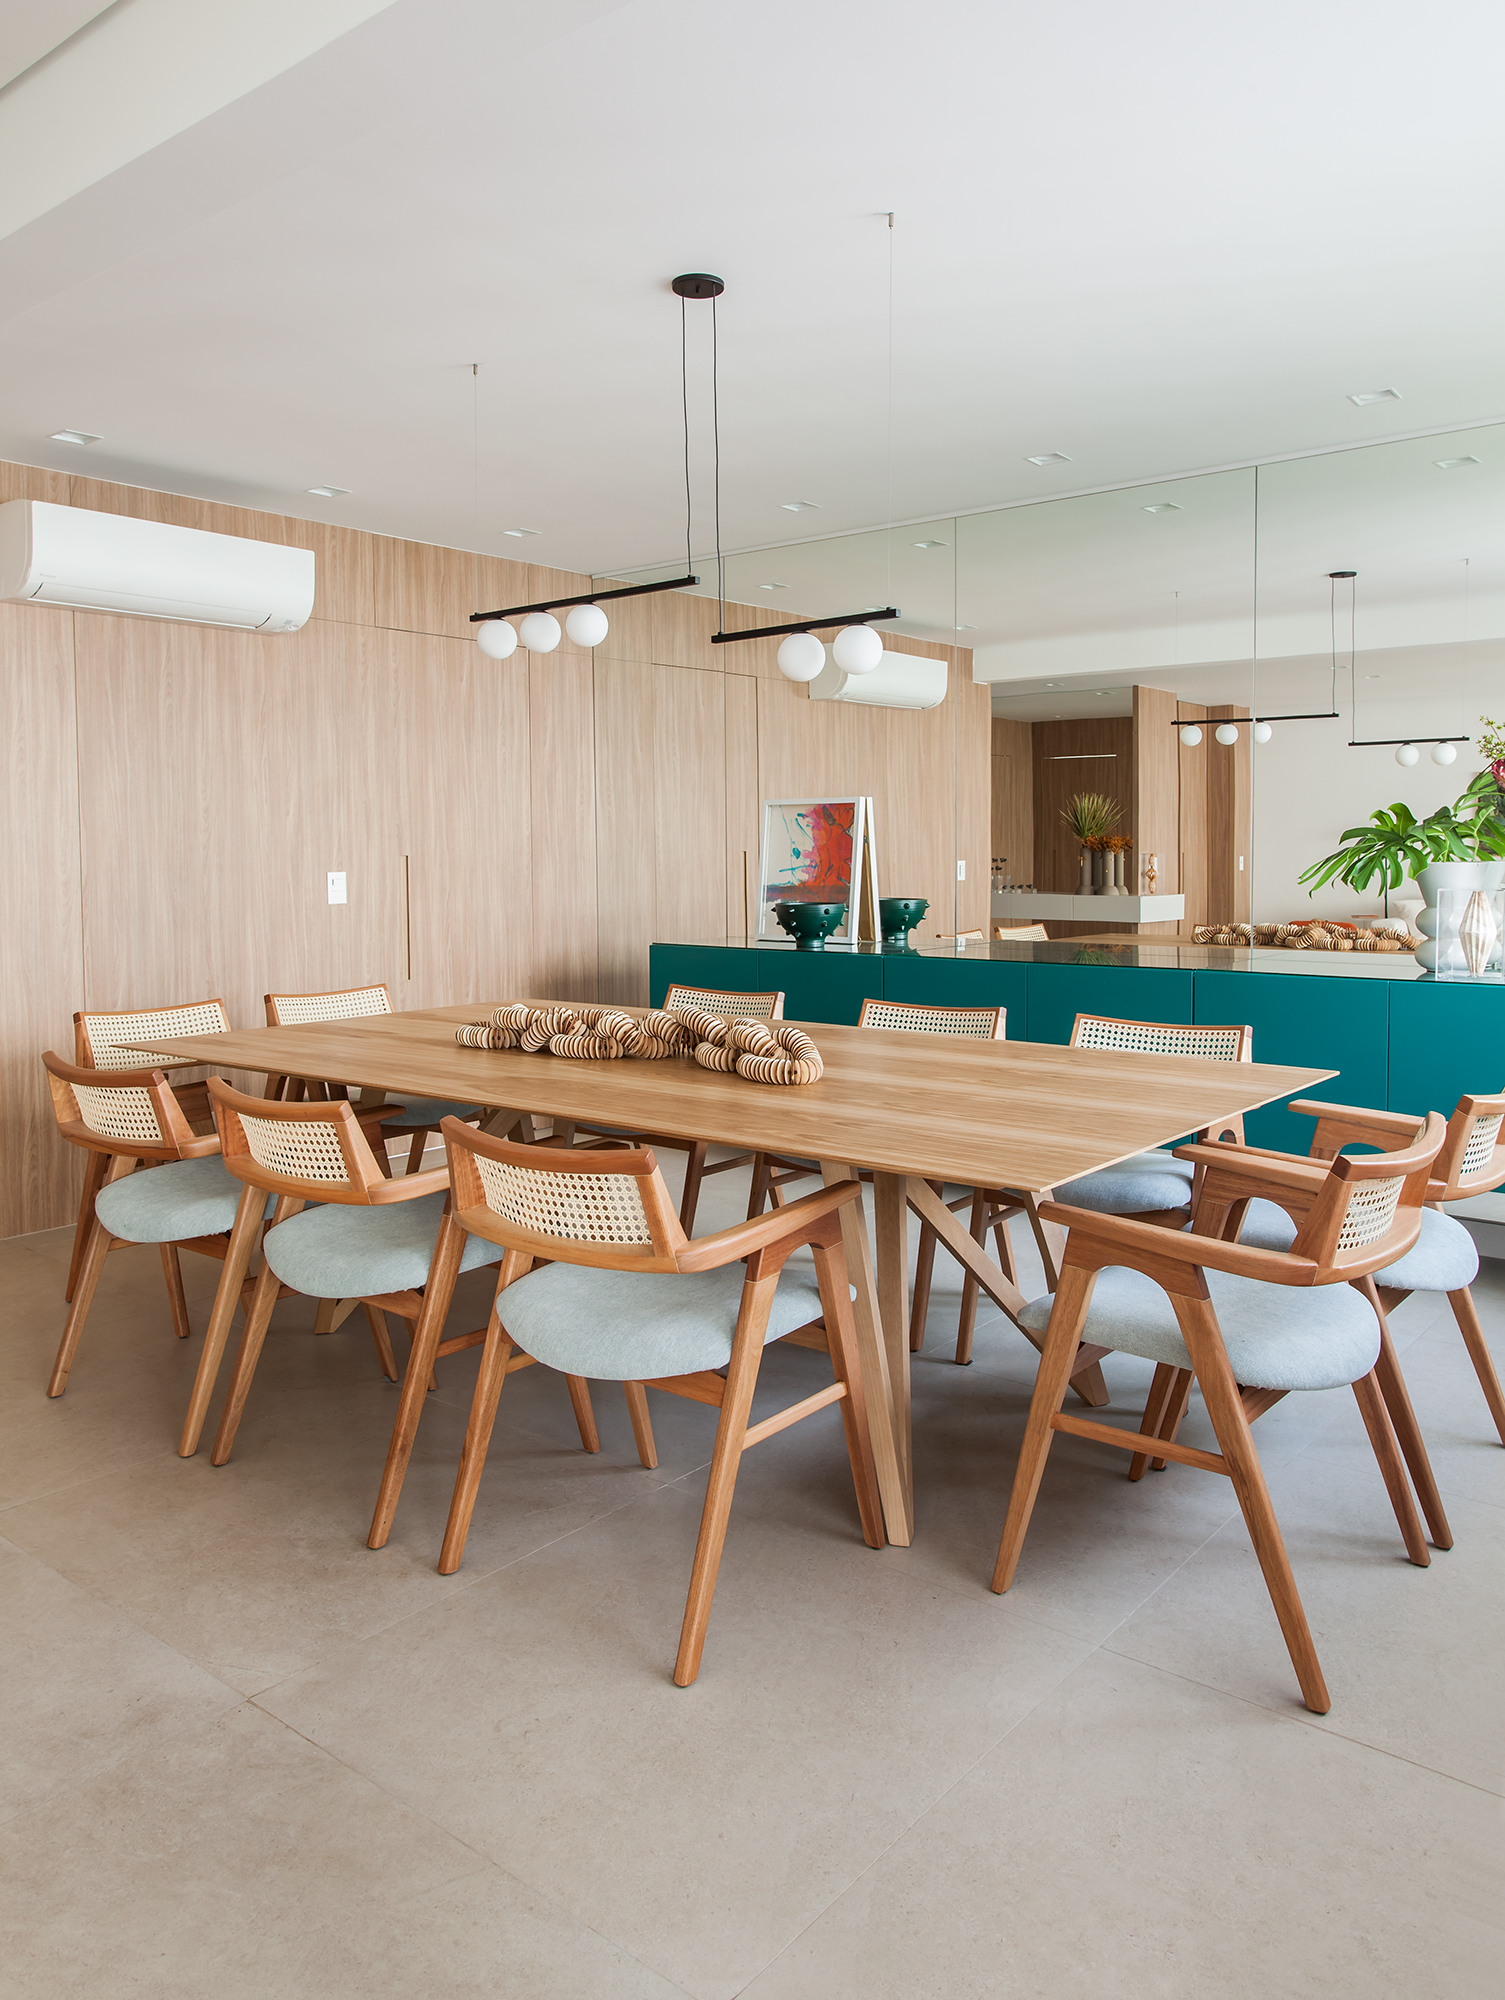 Paleta cores alegres tons terrosos décor apê 230 m2 Korman Arquitetos decoração sala jantar mesa cadeira aparador